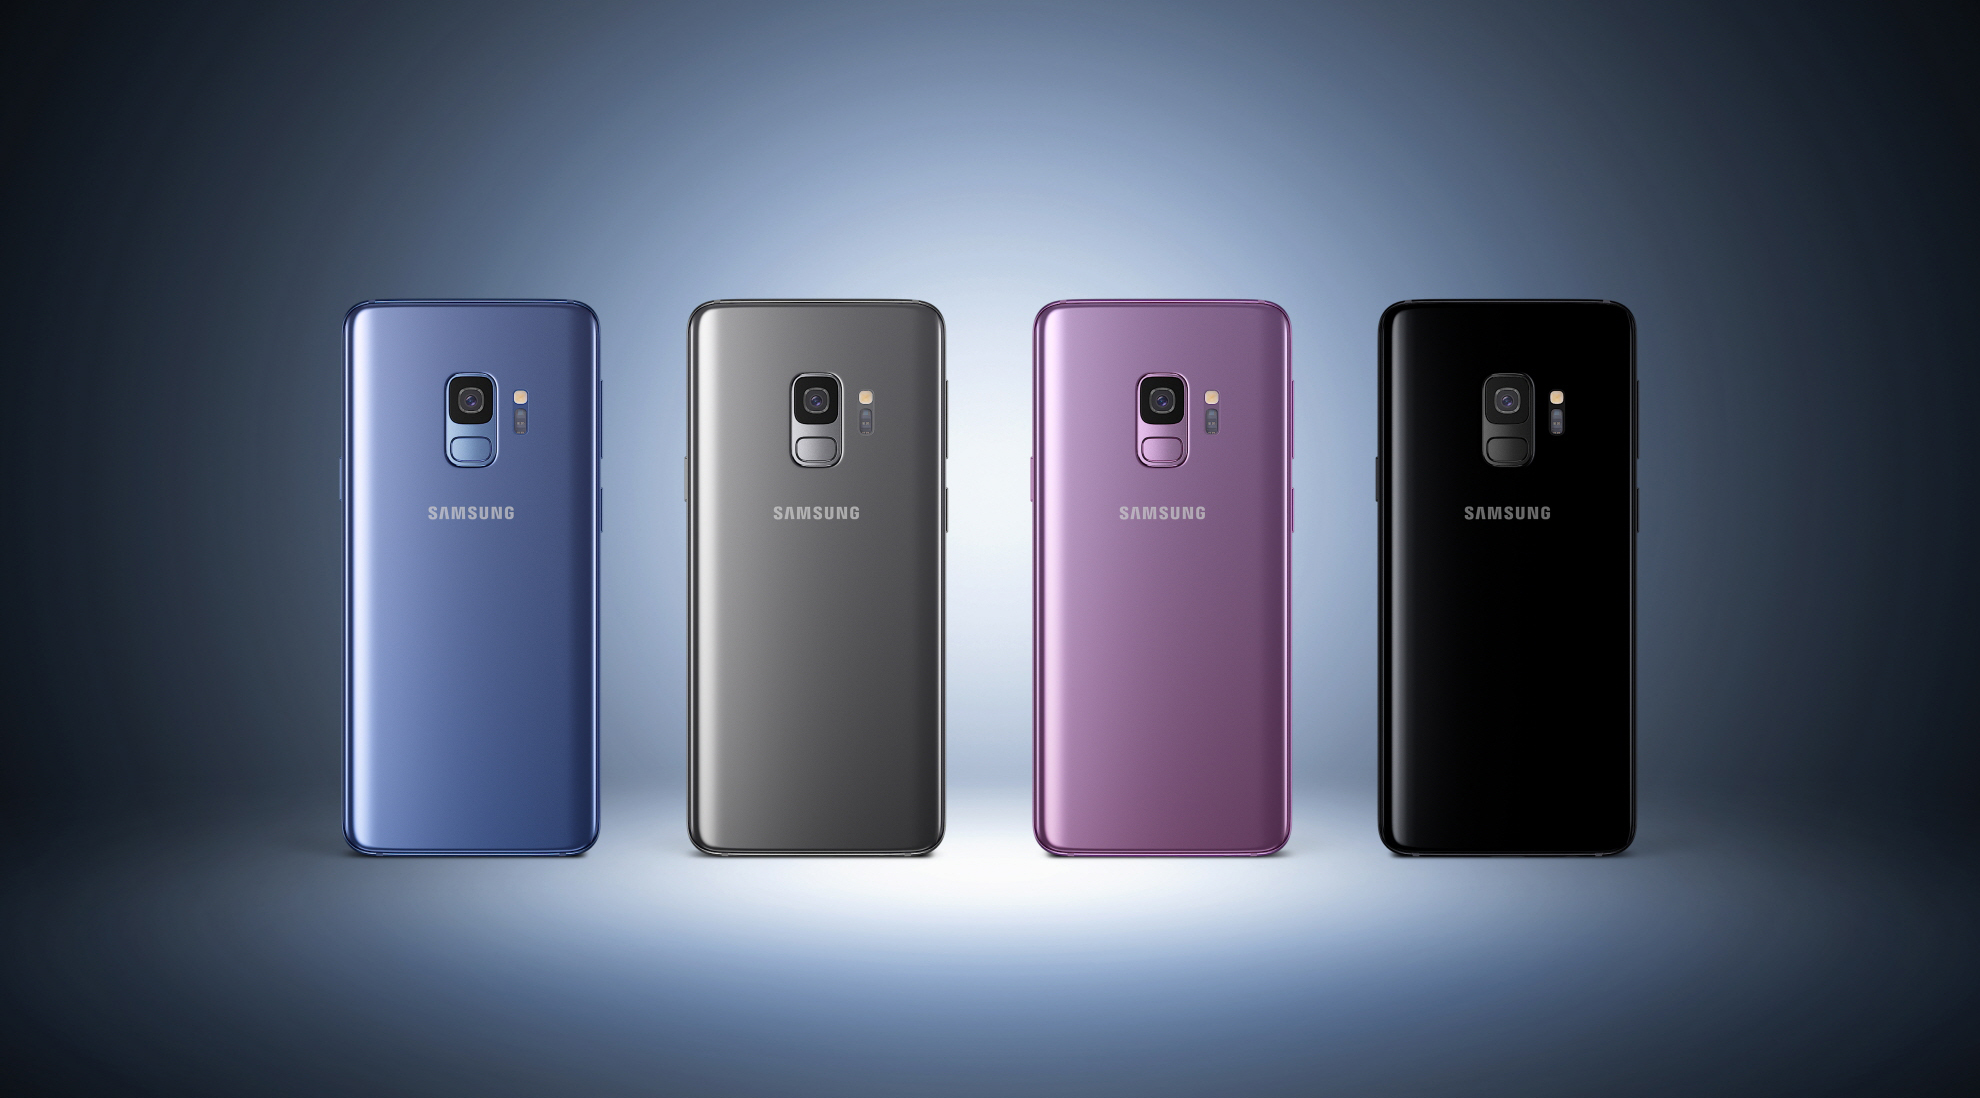 Samsung представила новые модели телефонов Galaxy S9